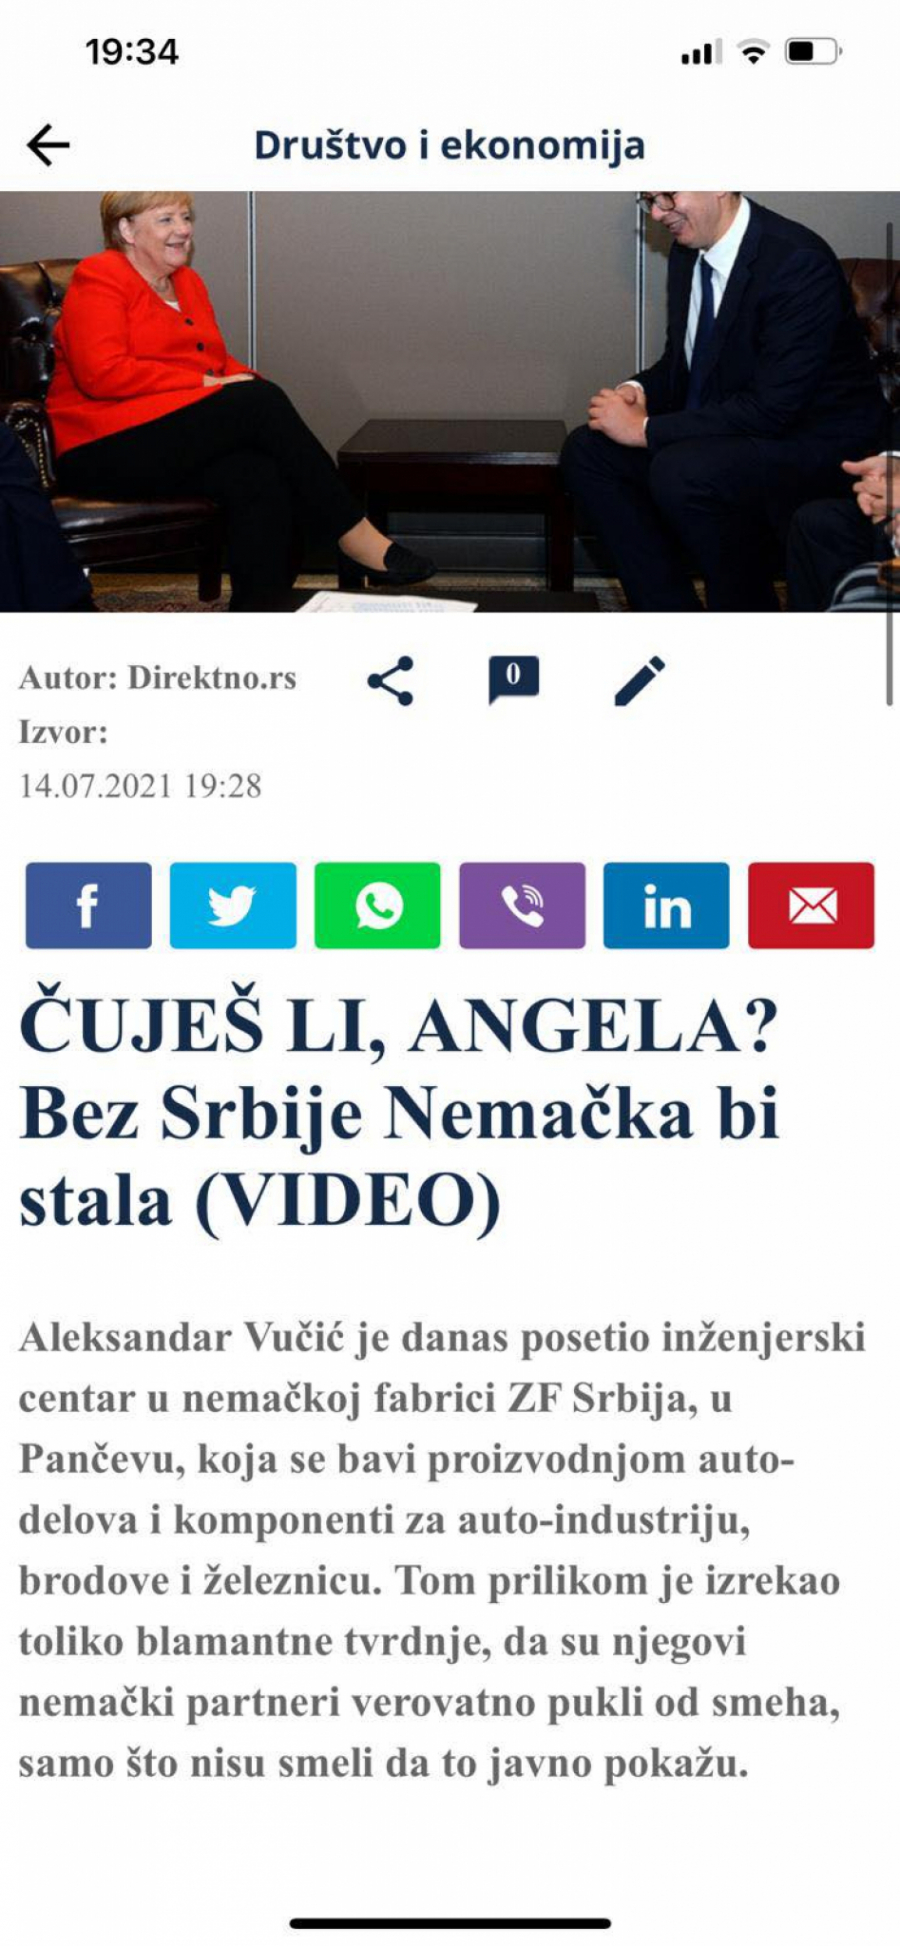 ĐILASOV PORTAL NAPAO PREDSEDNIKA SRBIJE Smeta im Vučić, jer hvali srpske inženjere, u sve upleli Angelu Merkel